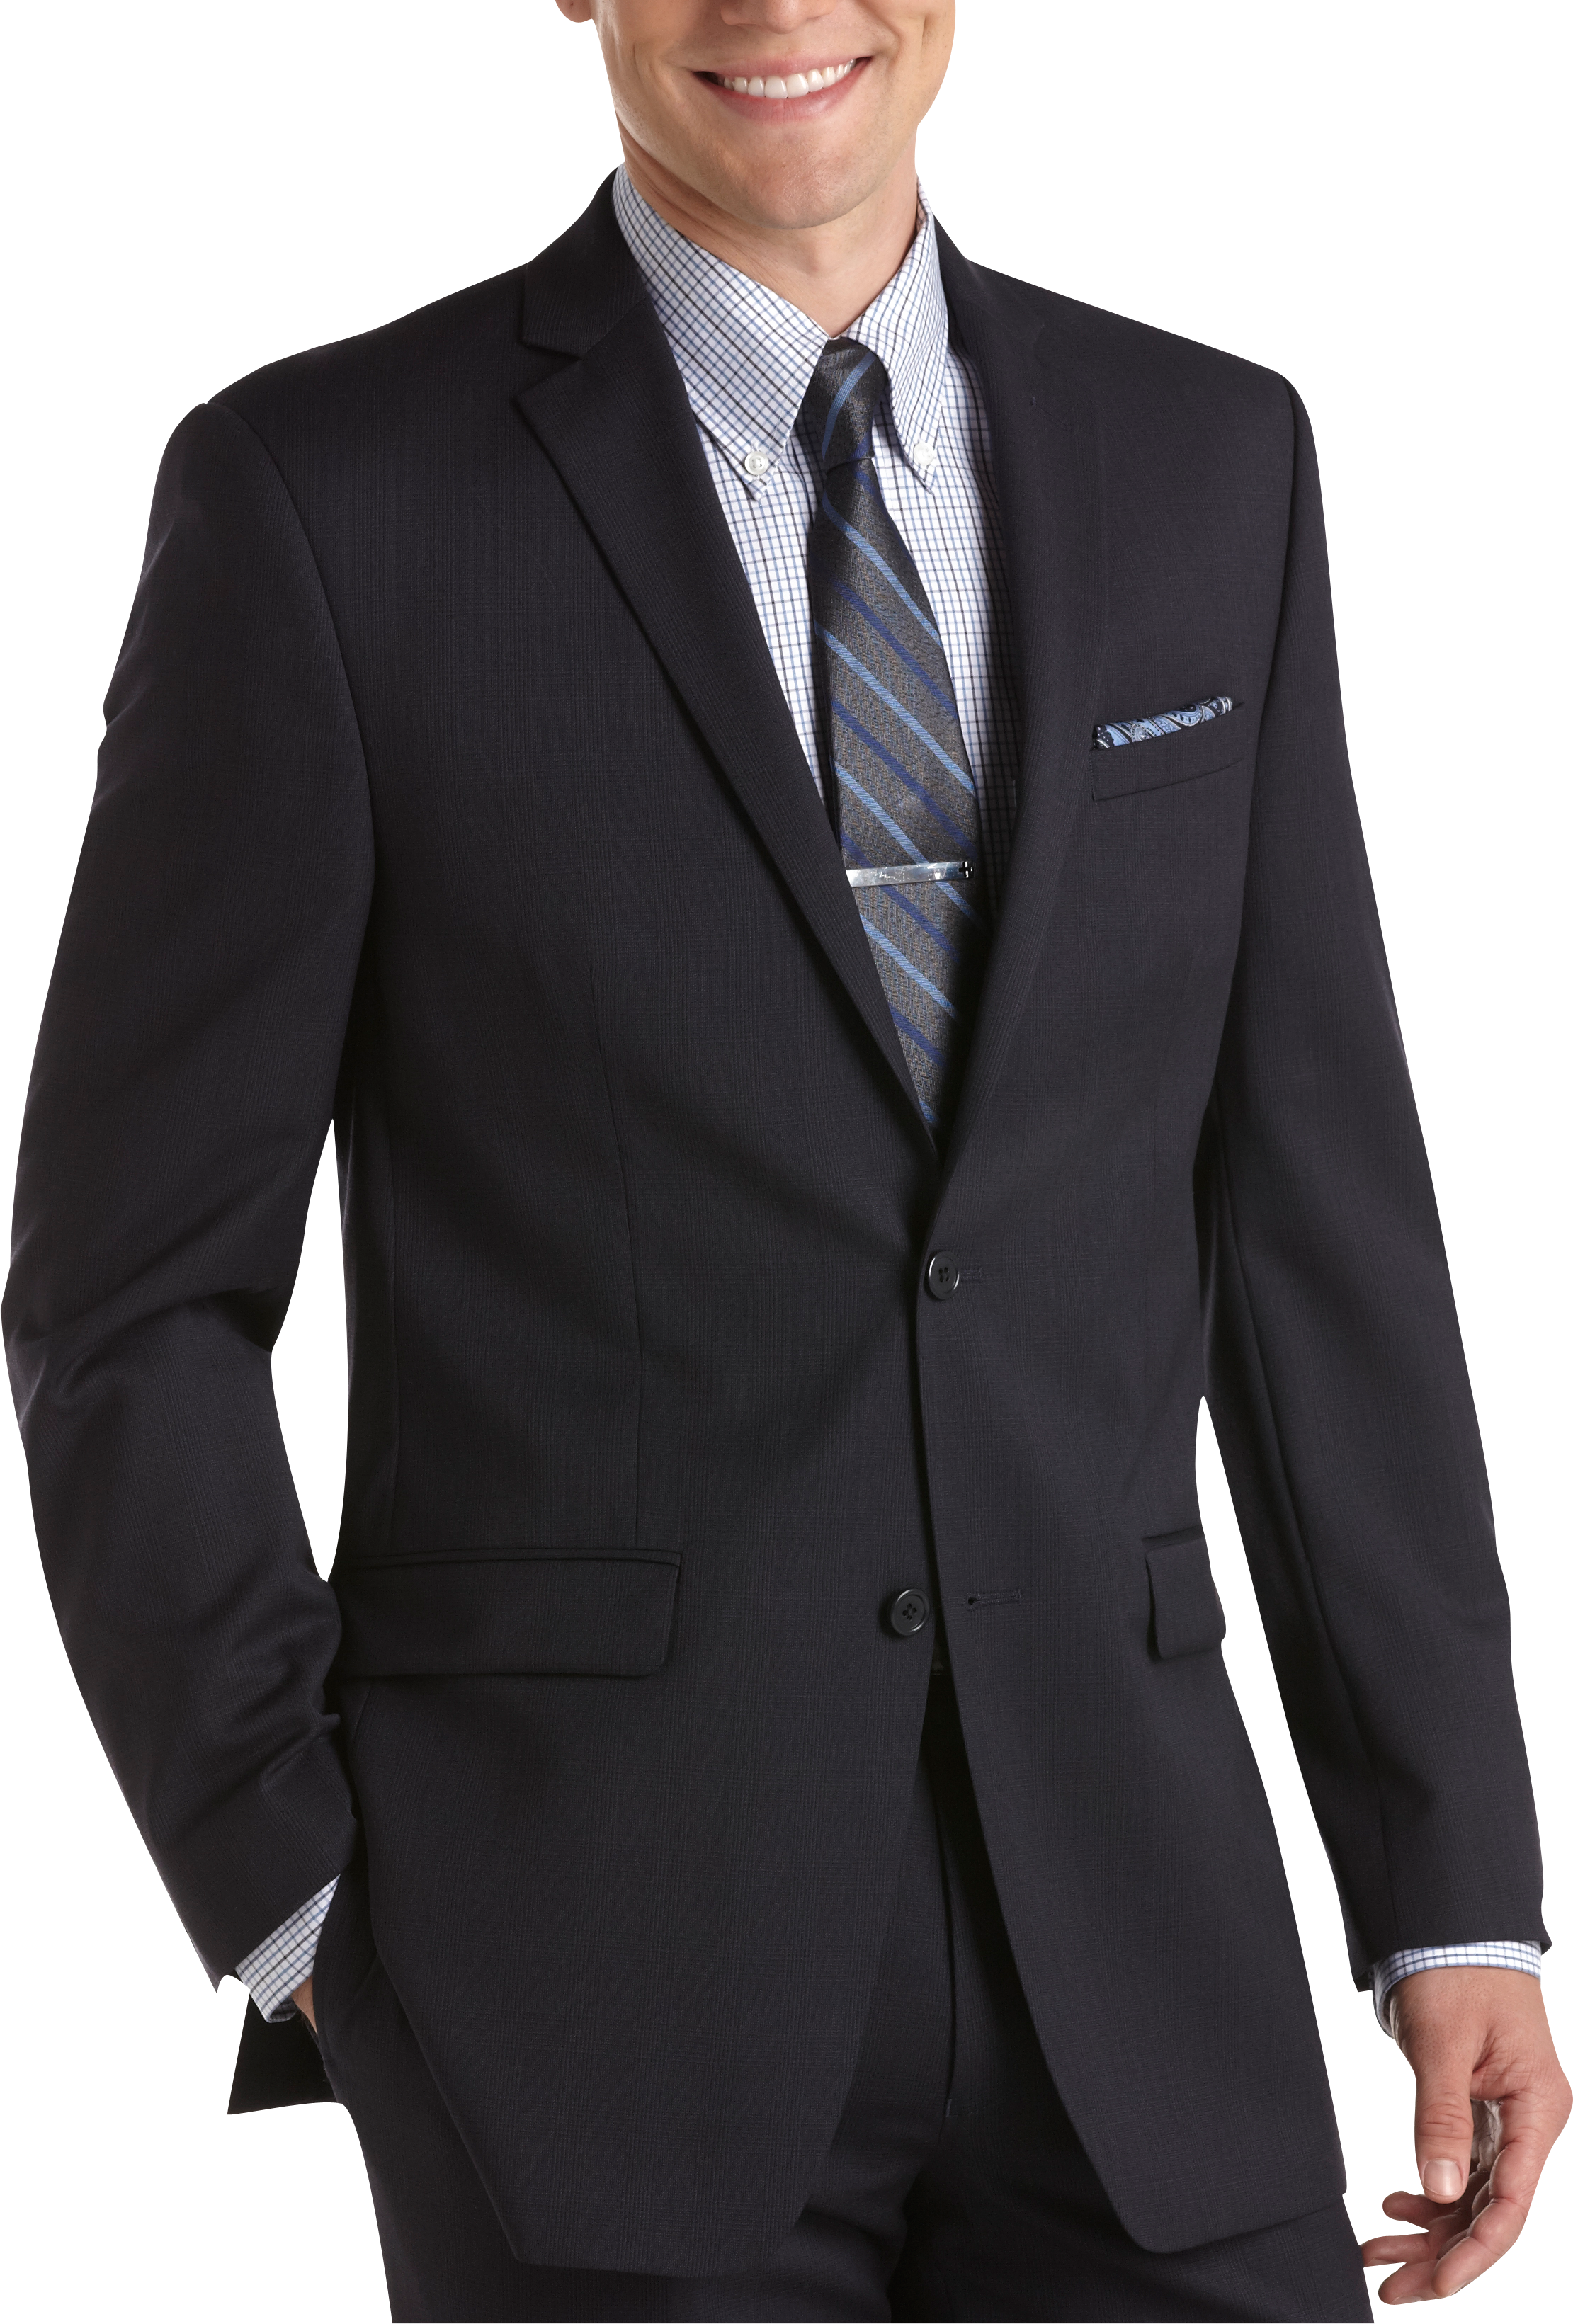 Joseph Abboud Navy Plaid Slim Fit Suit - Men's Suits | Men's Wearhouse